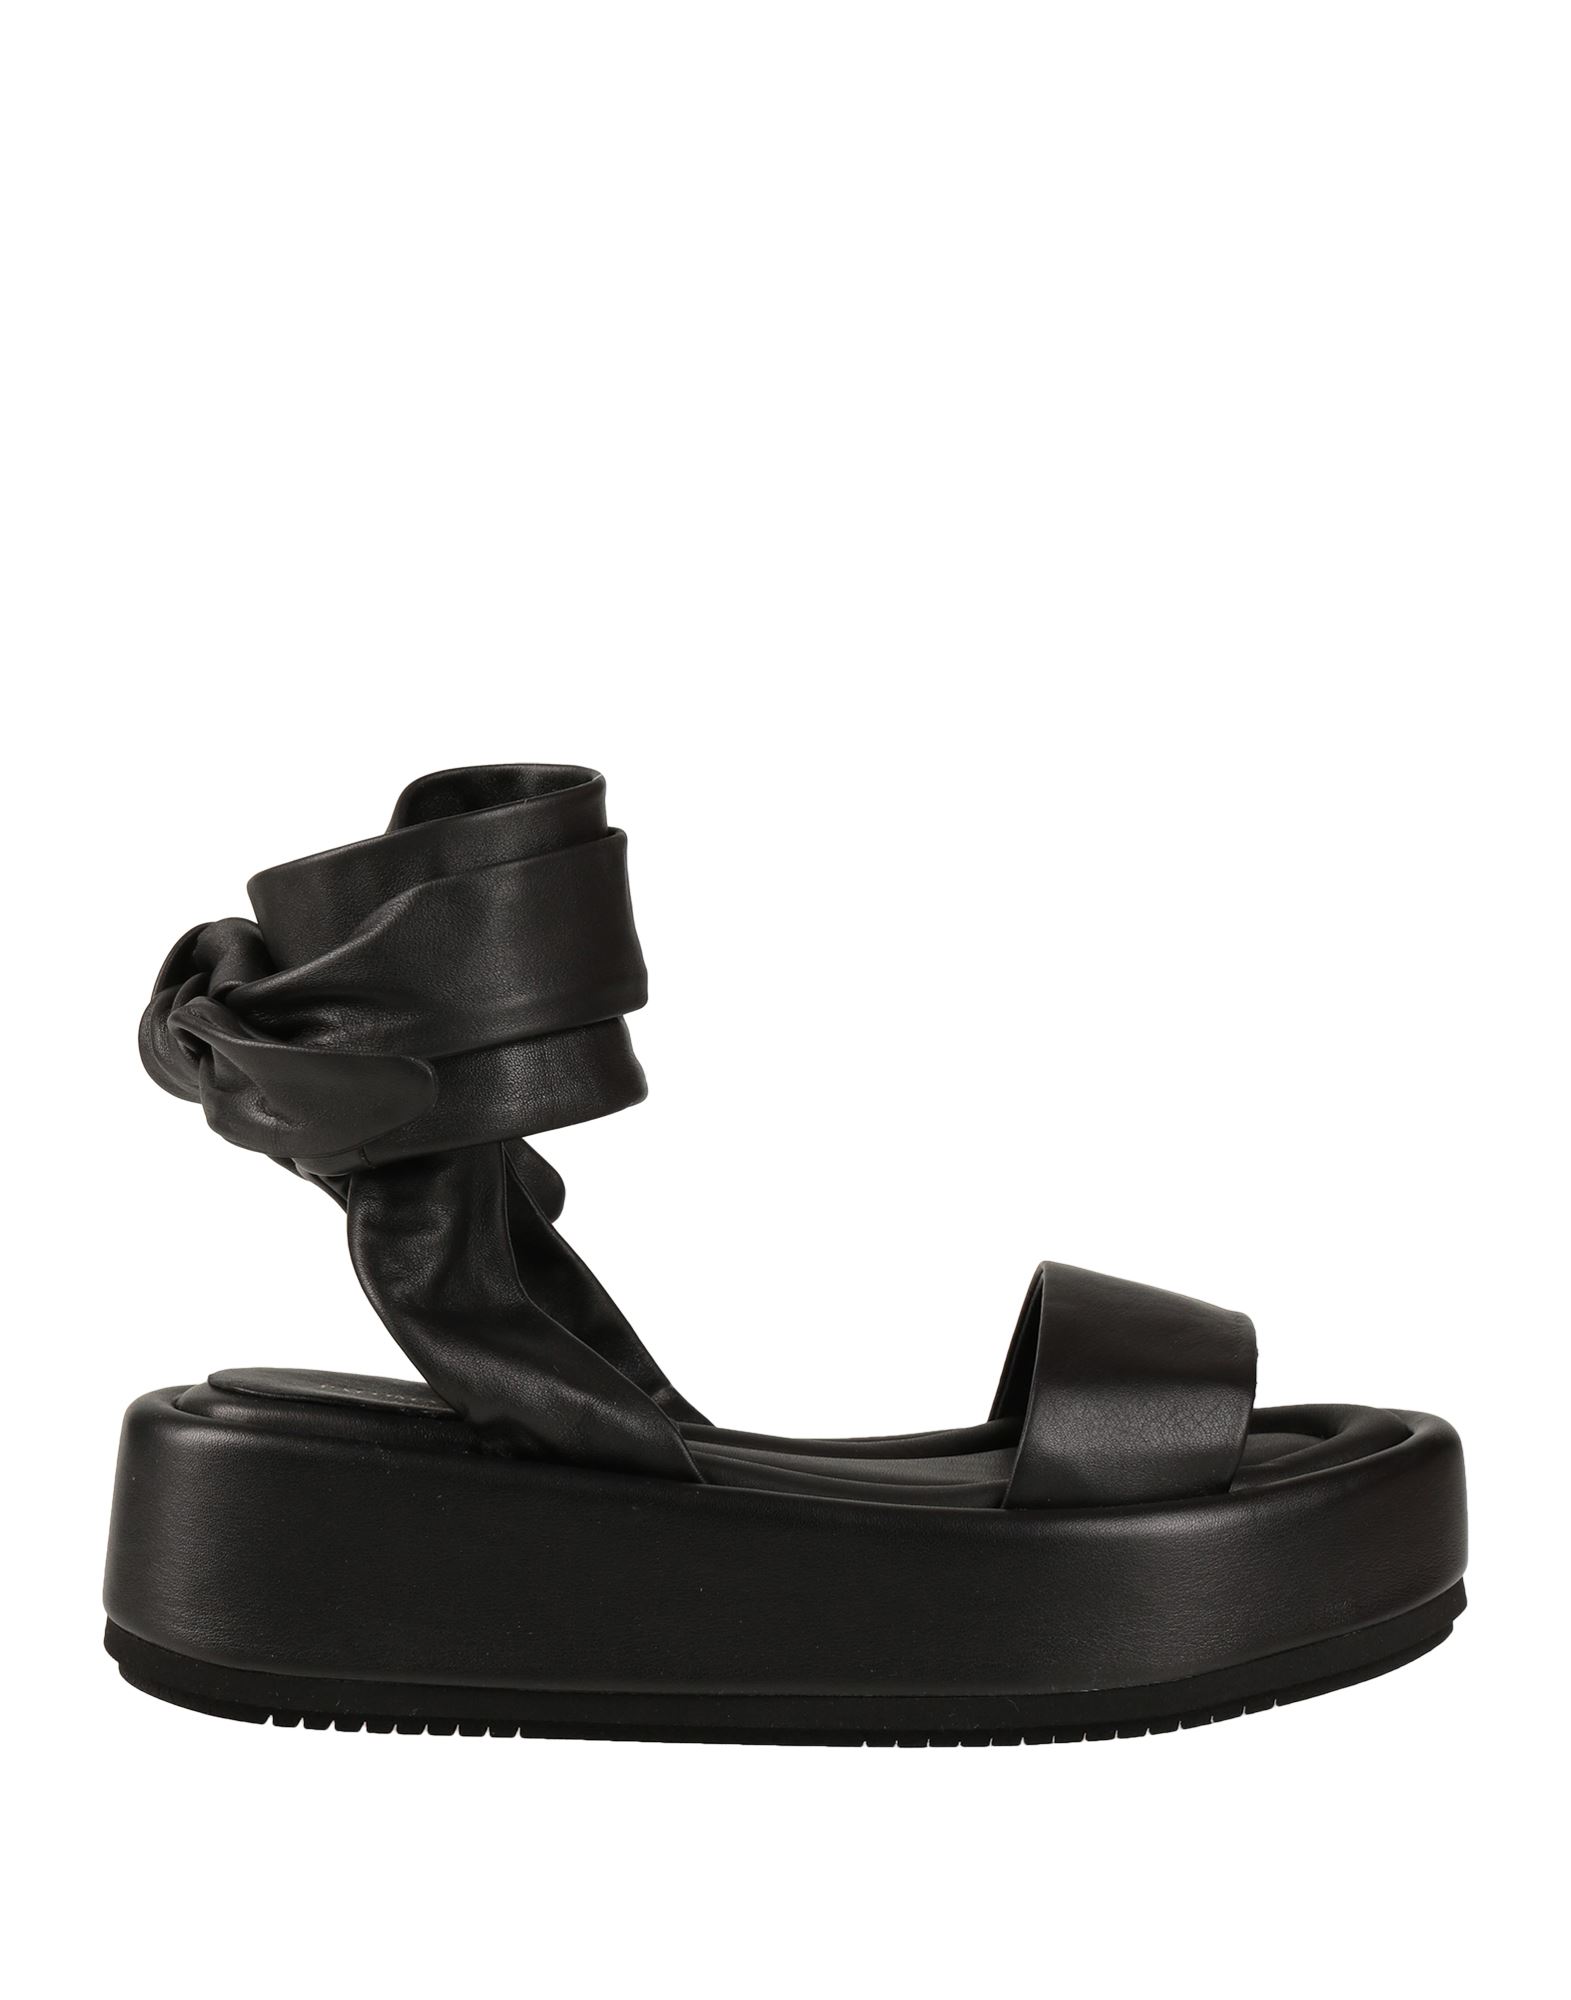 Paloma Barceló Woman Sandals Black Size 9 Soft Leather